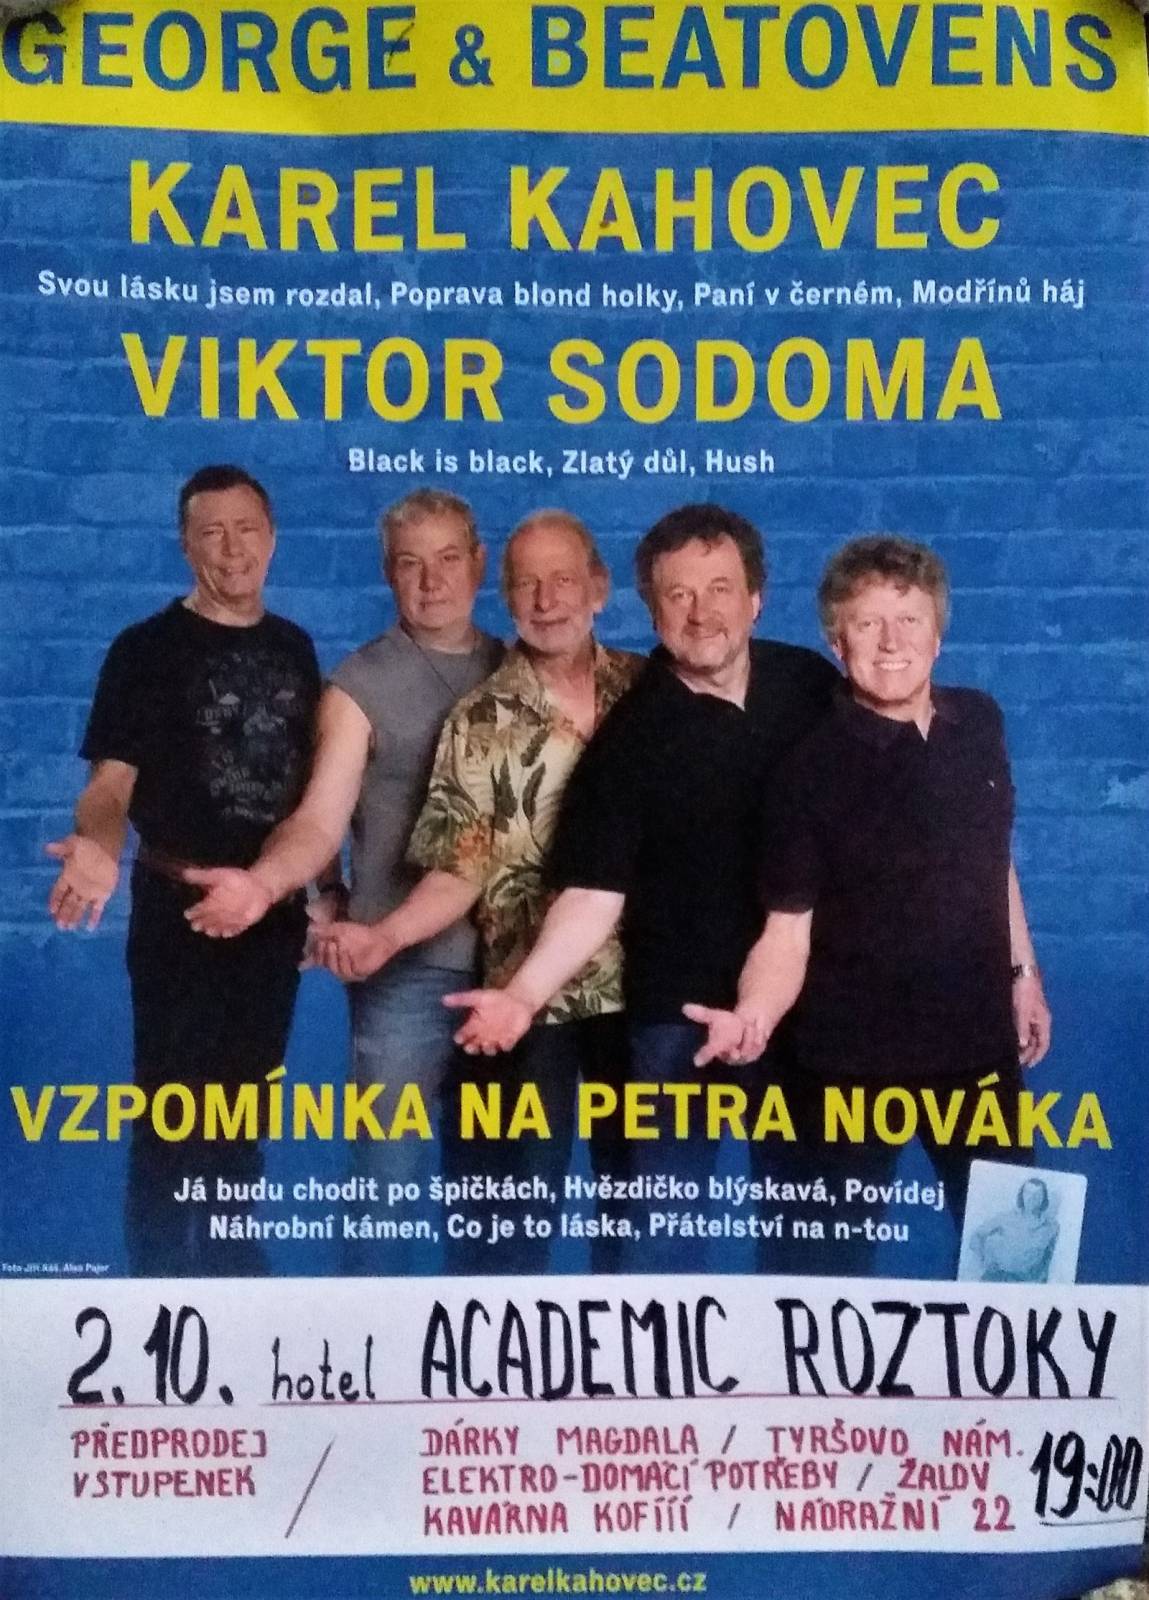 George&Beatovens, Viktor Sodoma